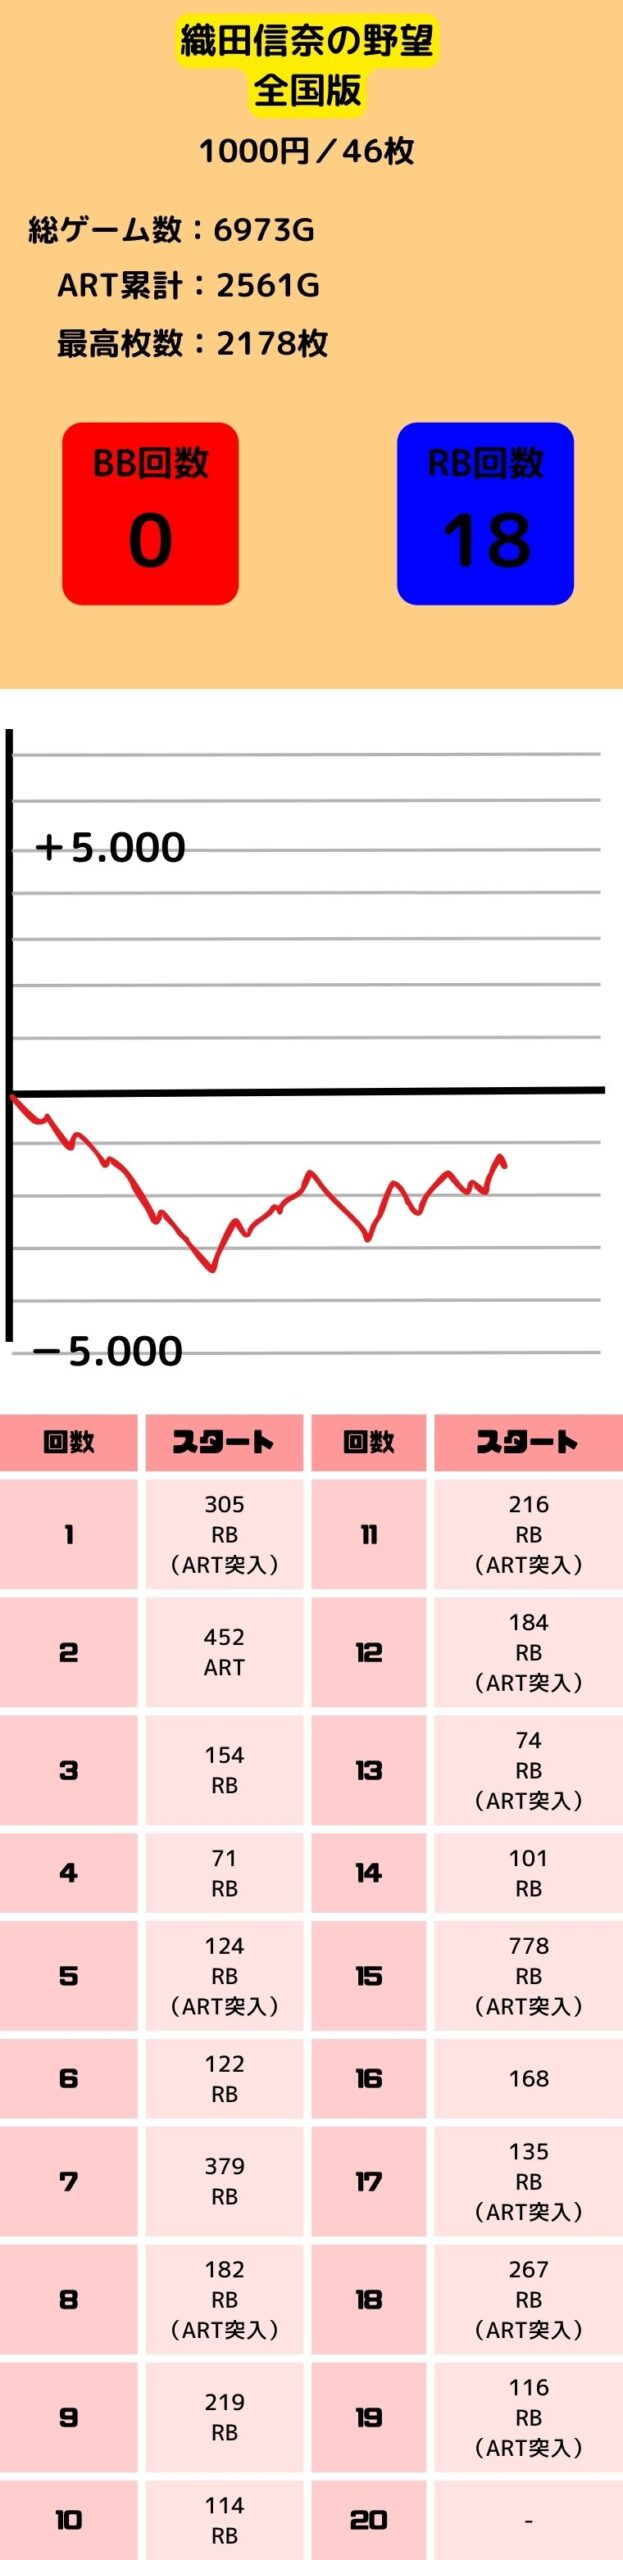 スロット-織田信奈の野望全国版の低設定1.2のグラフと初当たり挙動